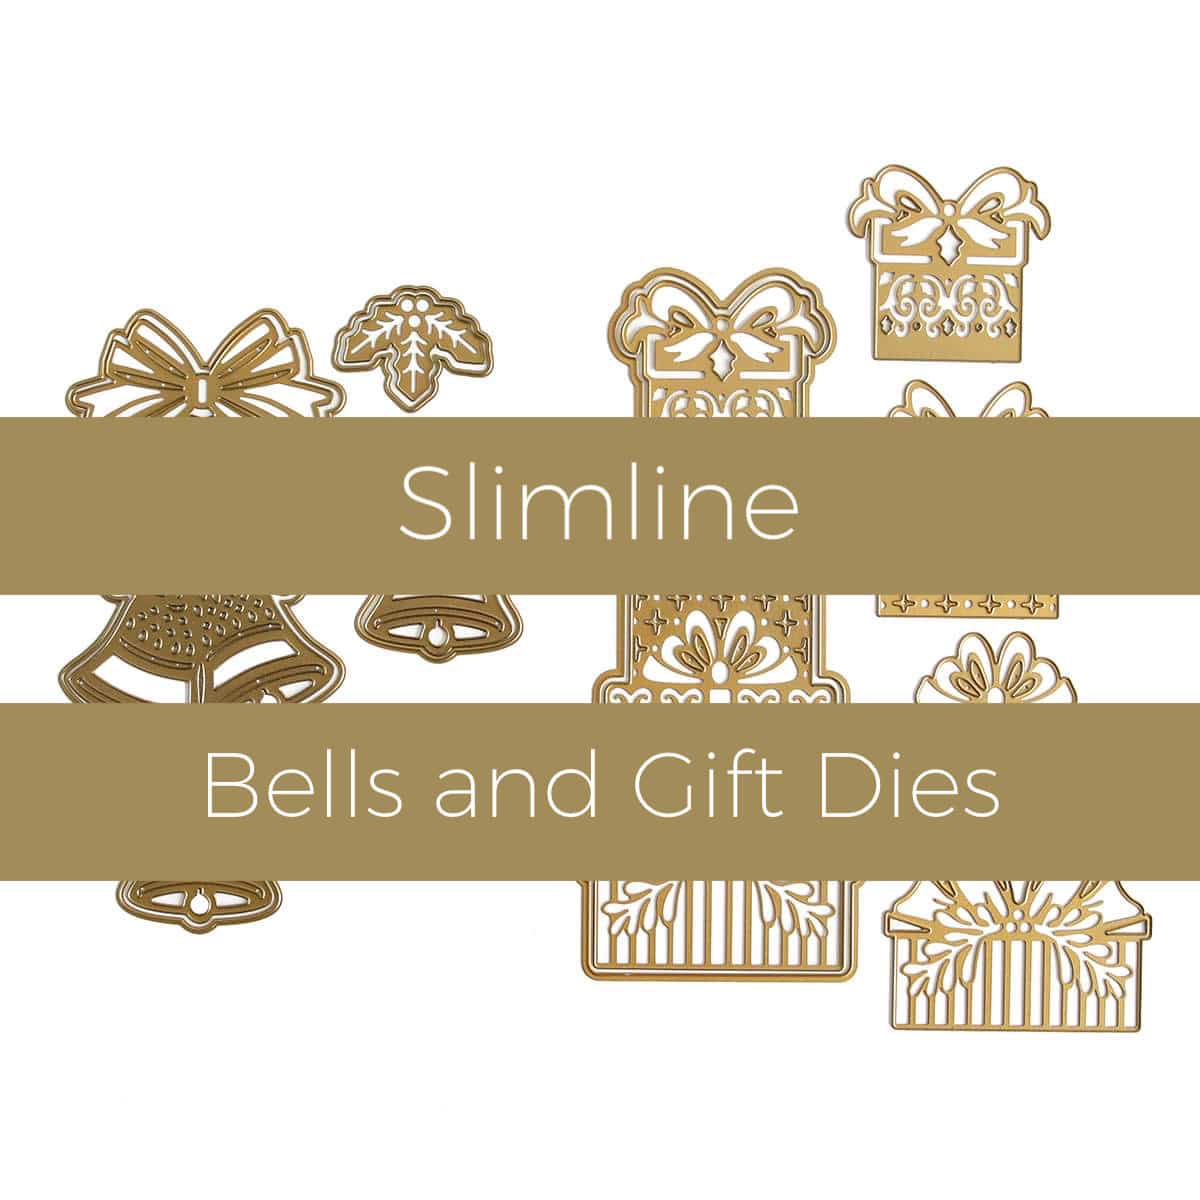 Slimline bells and gift dies.